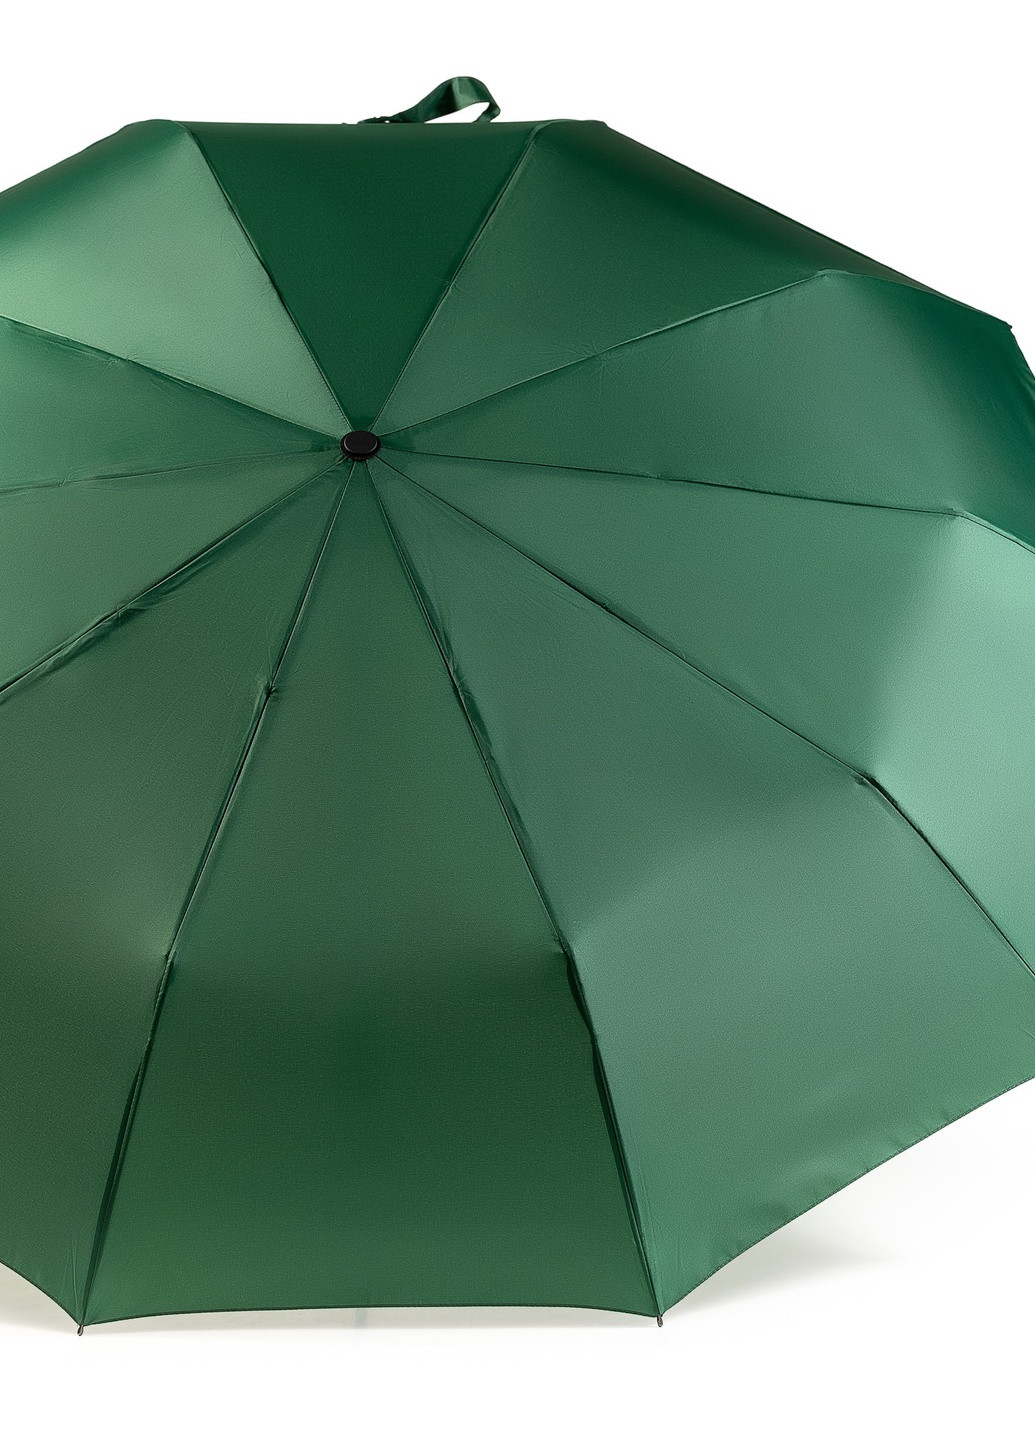 Зонт Ring складной 10-ти спицевый, полный автомат 115см зеленый Krago (258994535)